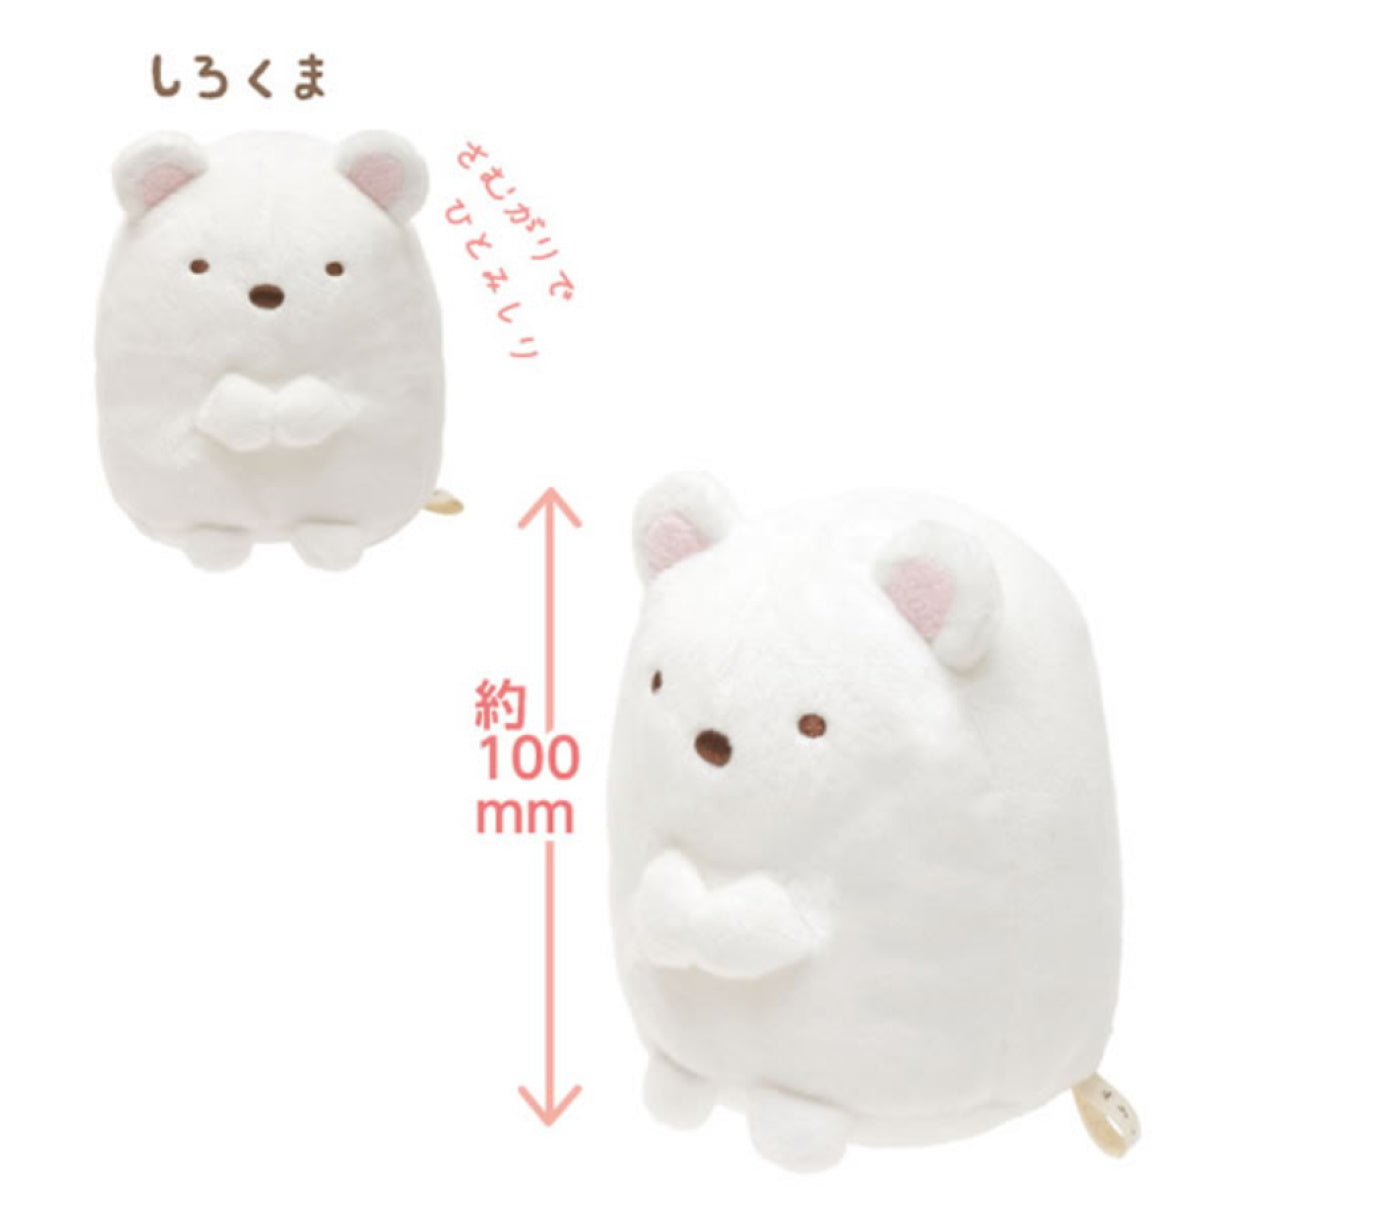 Sumikko Gurashi  Shirokuma Polar Bear Plush - Medium 10 cm